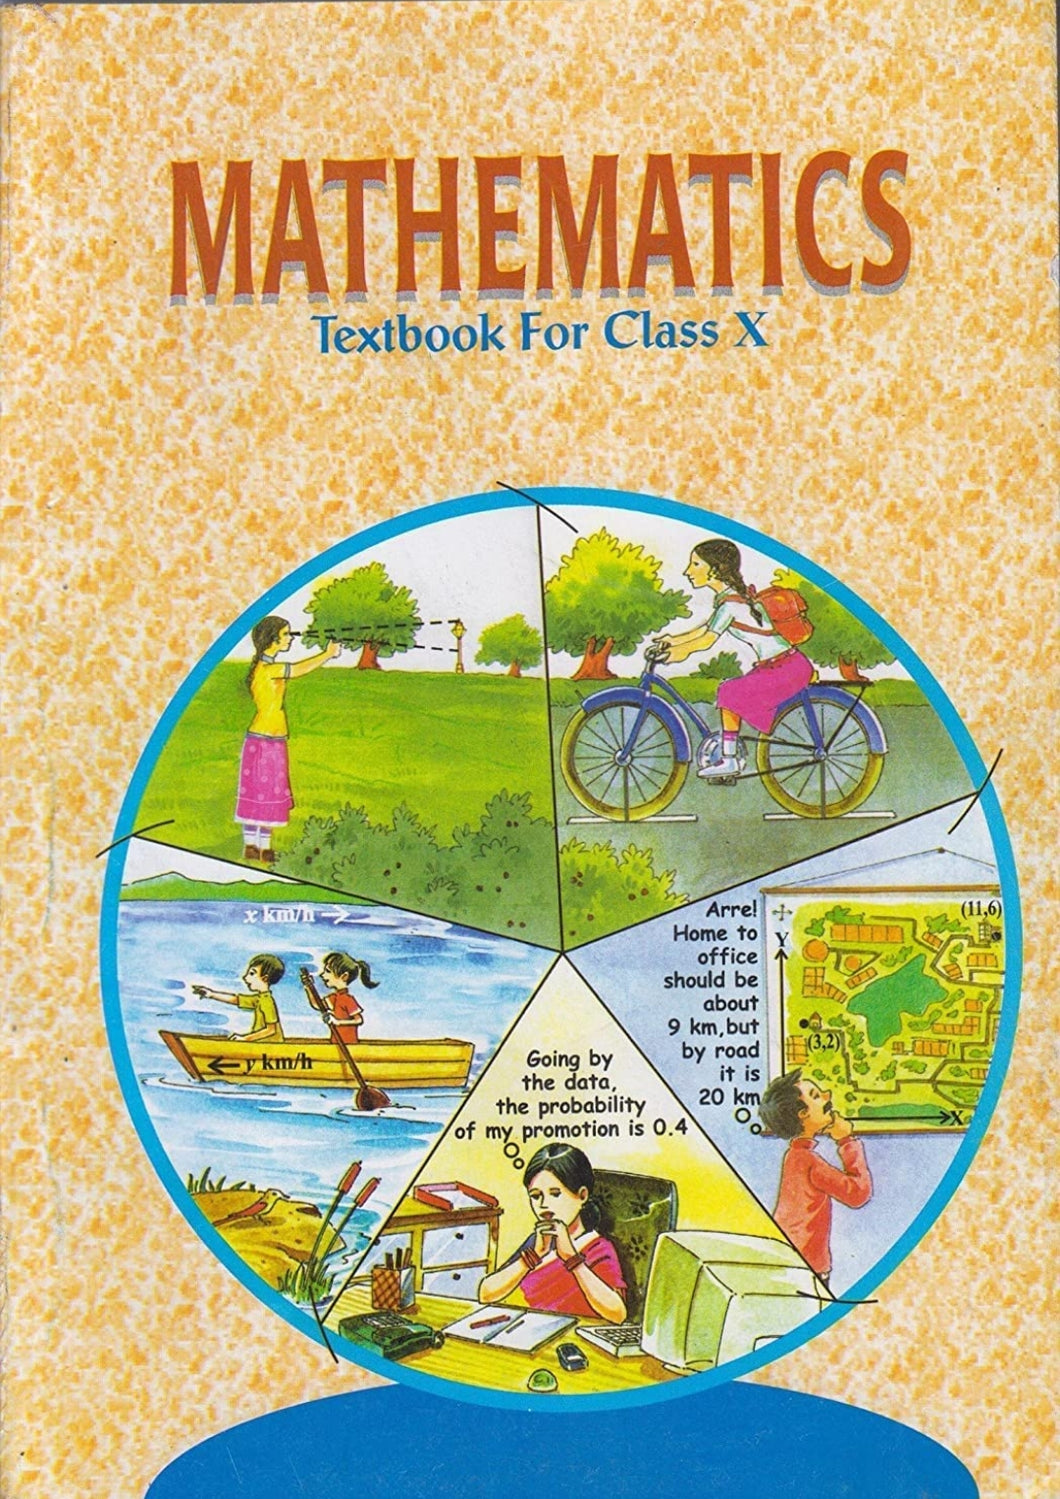 NCERT Mathematics for Class 10 - latest edition as per NCERT/CBSE - Booksfy